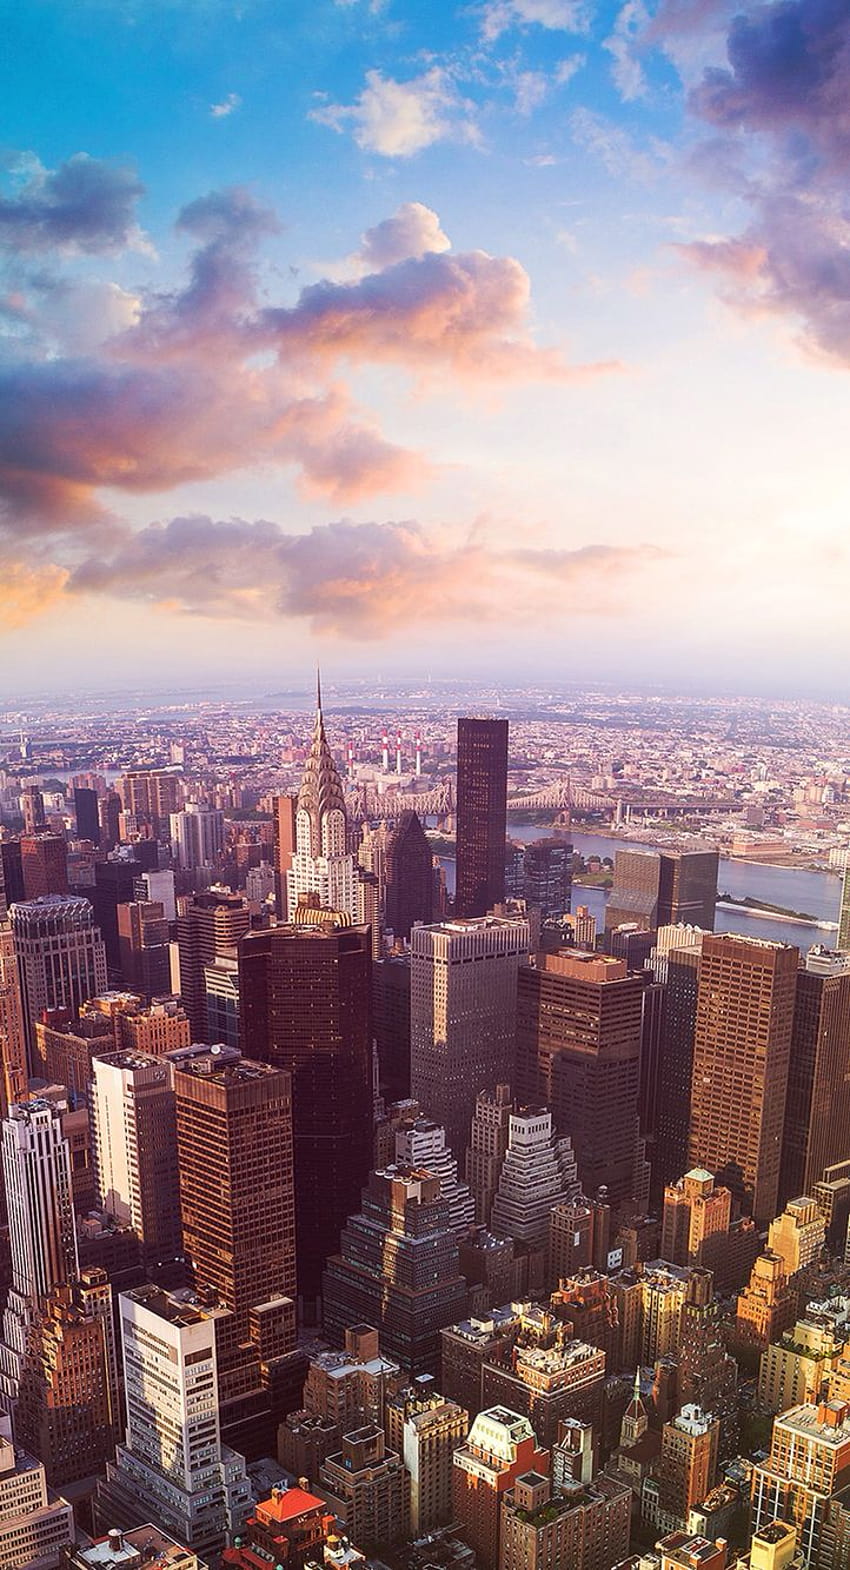 New Yorks breathtaking Desktop backgrounds New York skyline For city lovers